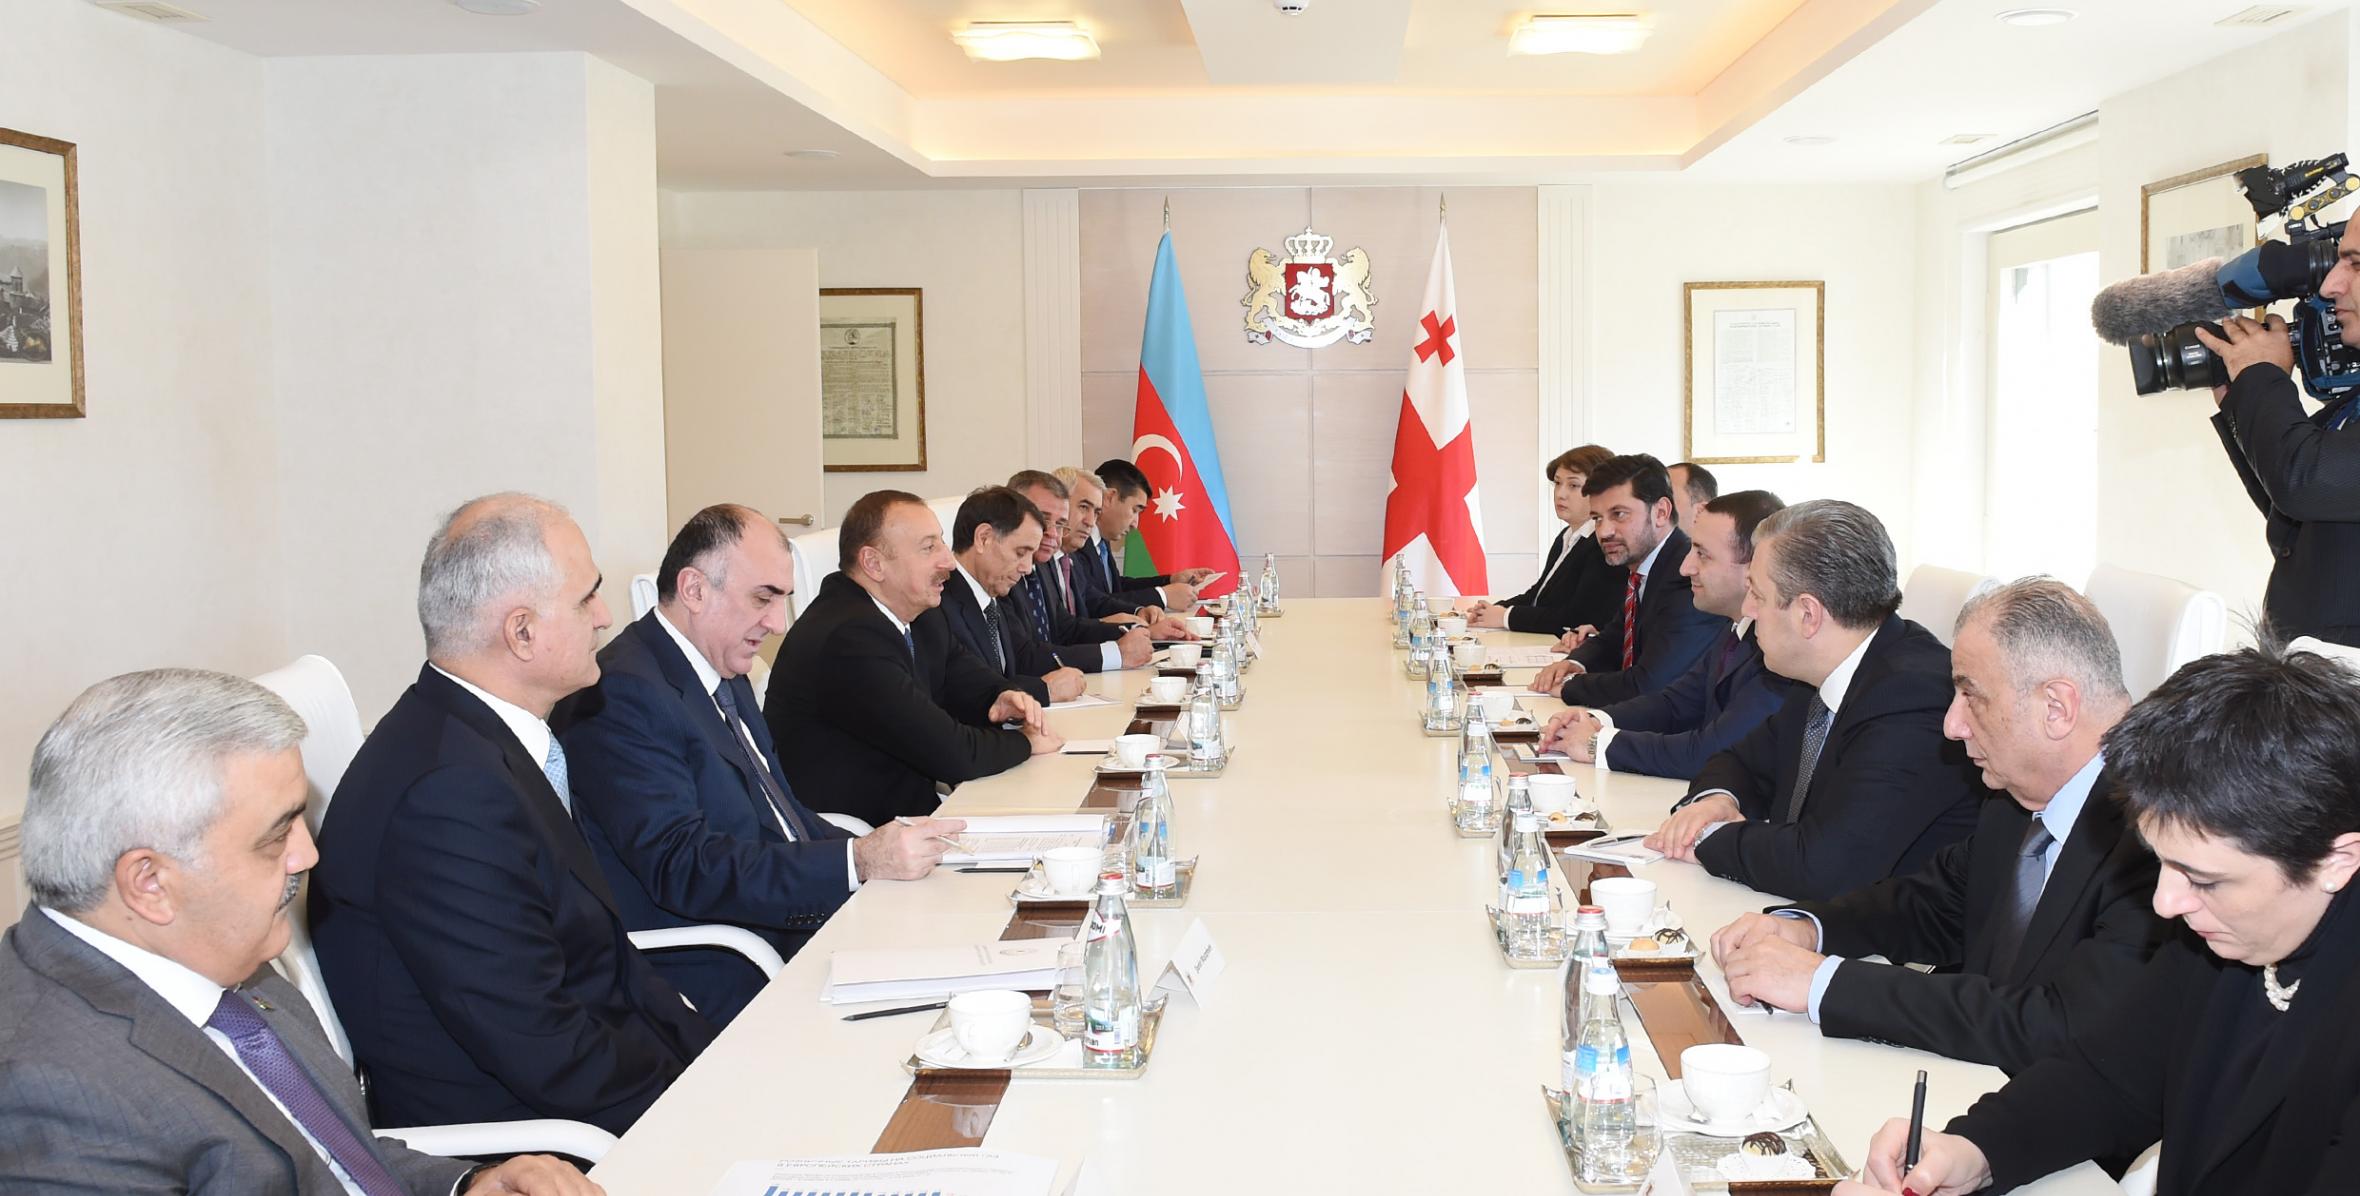 Состоялась встреча Ильхама Алиева и премьер-министра Грузии Ираклия Гарибашвили в расширенном составе